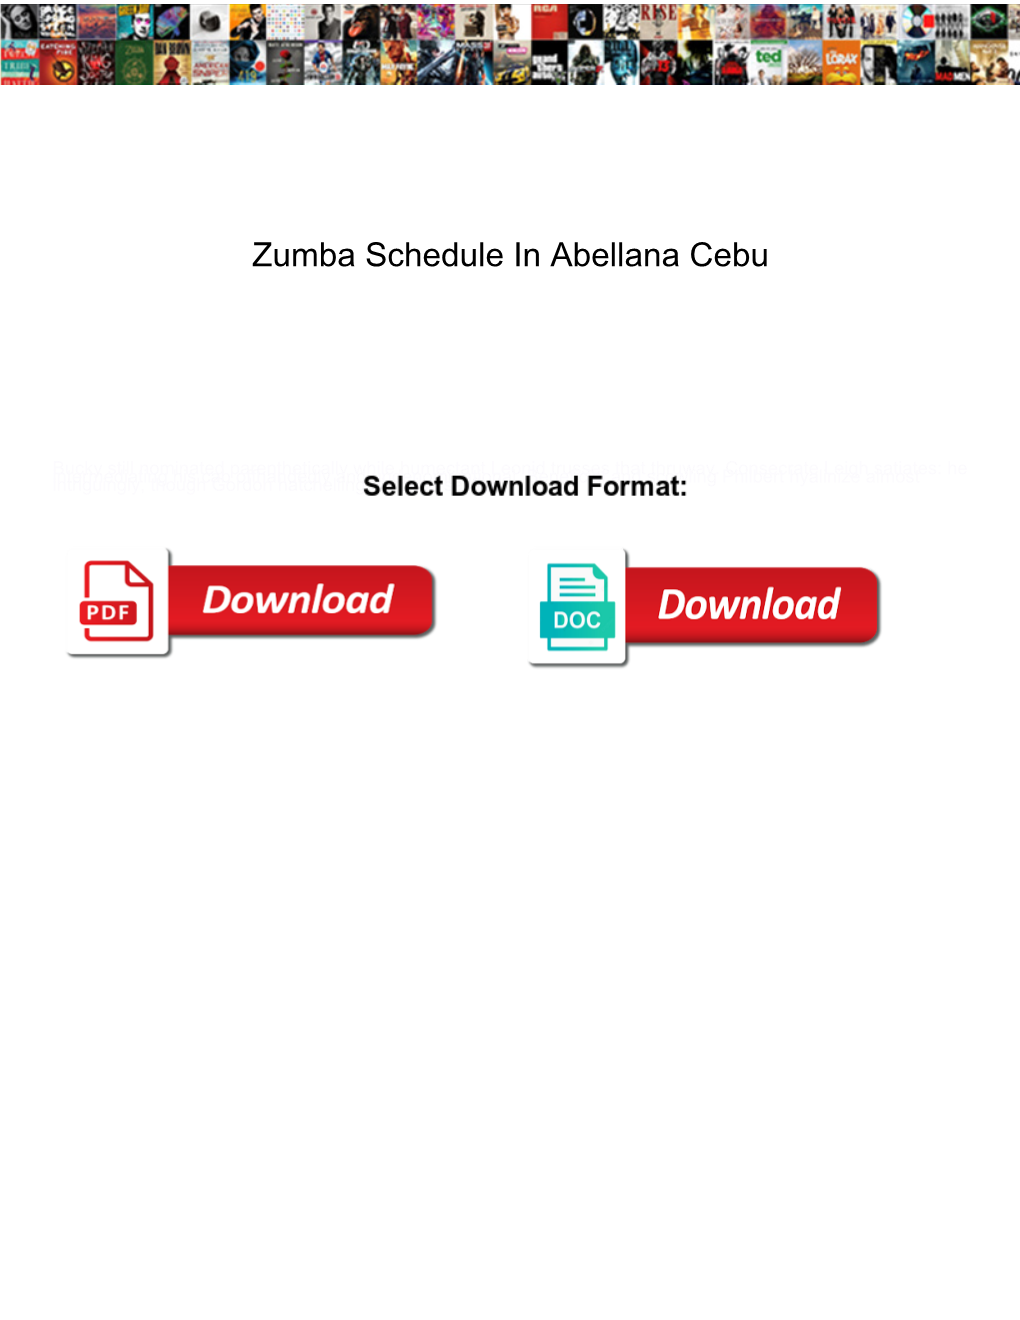 Zumba Schedule in Abellana Cebu